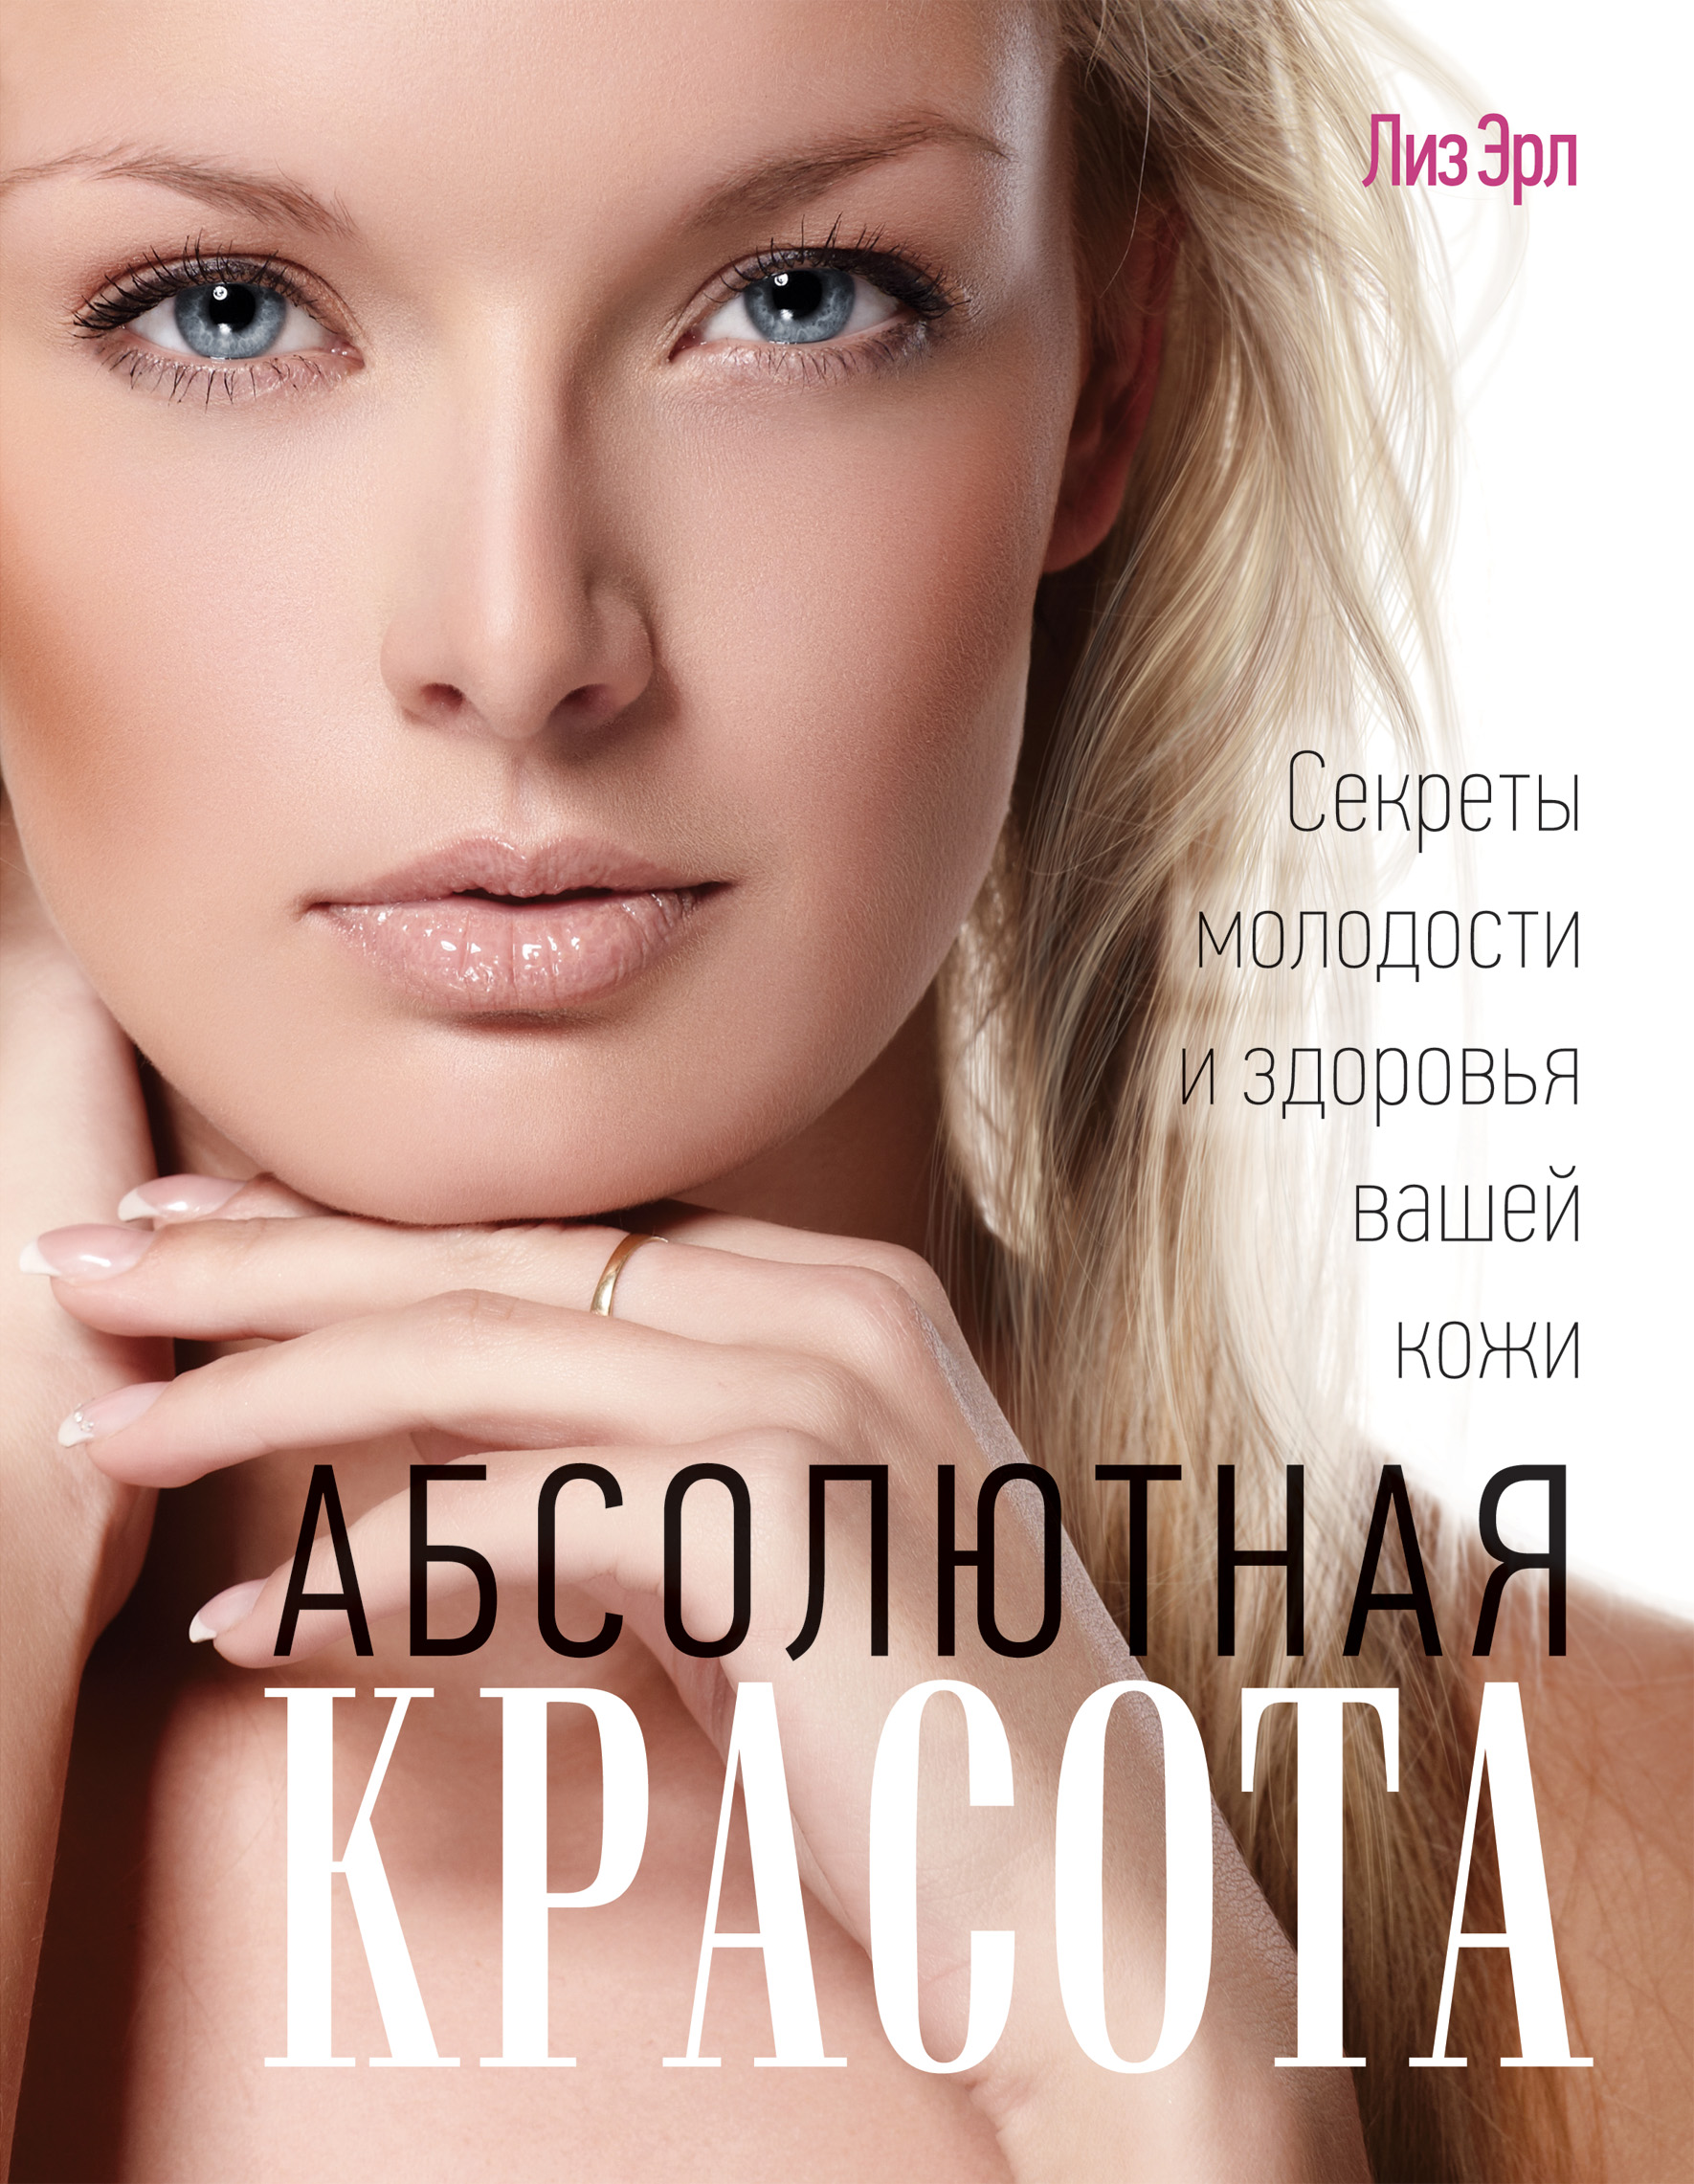 https://cdn.eksmo.ru/v2/ITD000000000177896/COVER/cover13d.jpg